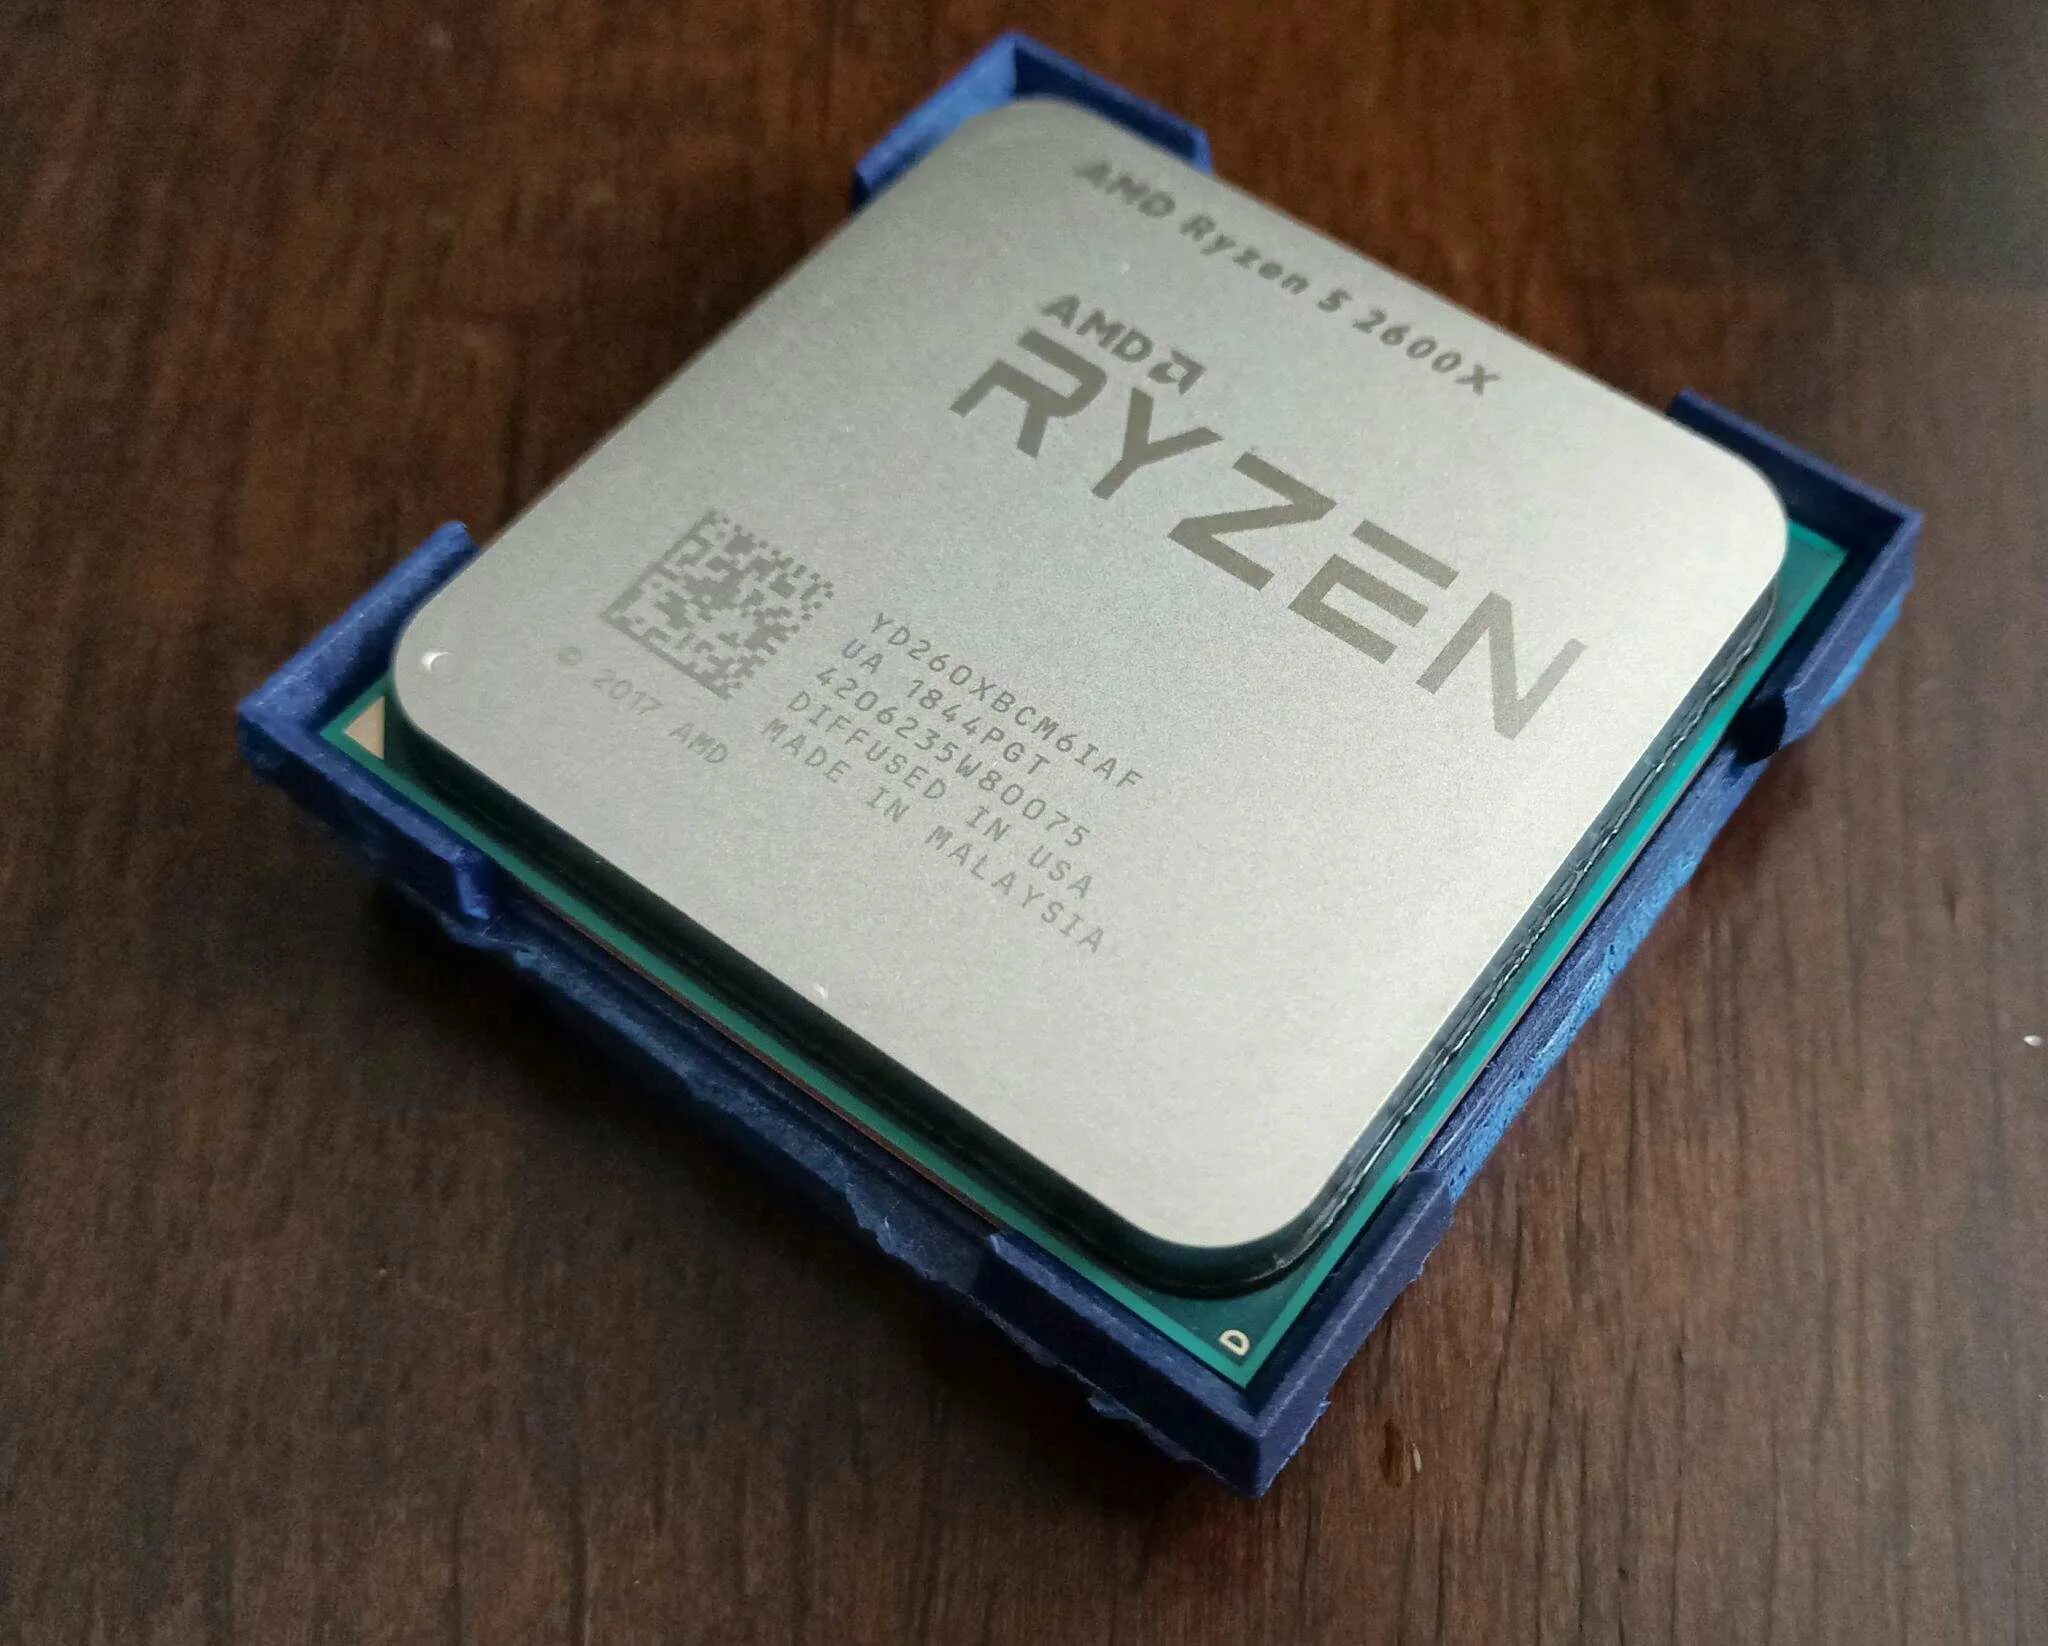 Ryzen 5 2600 six core processor 3.40